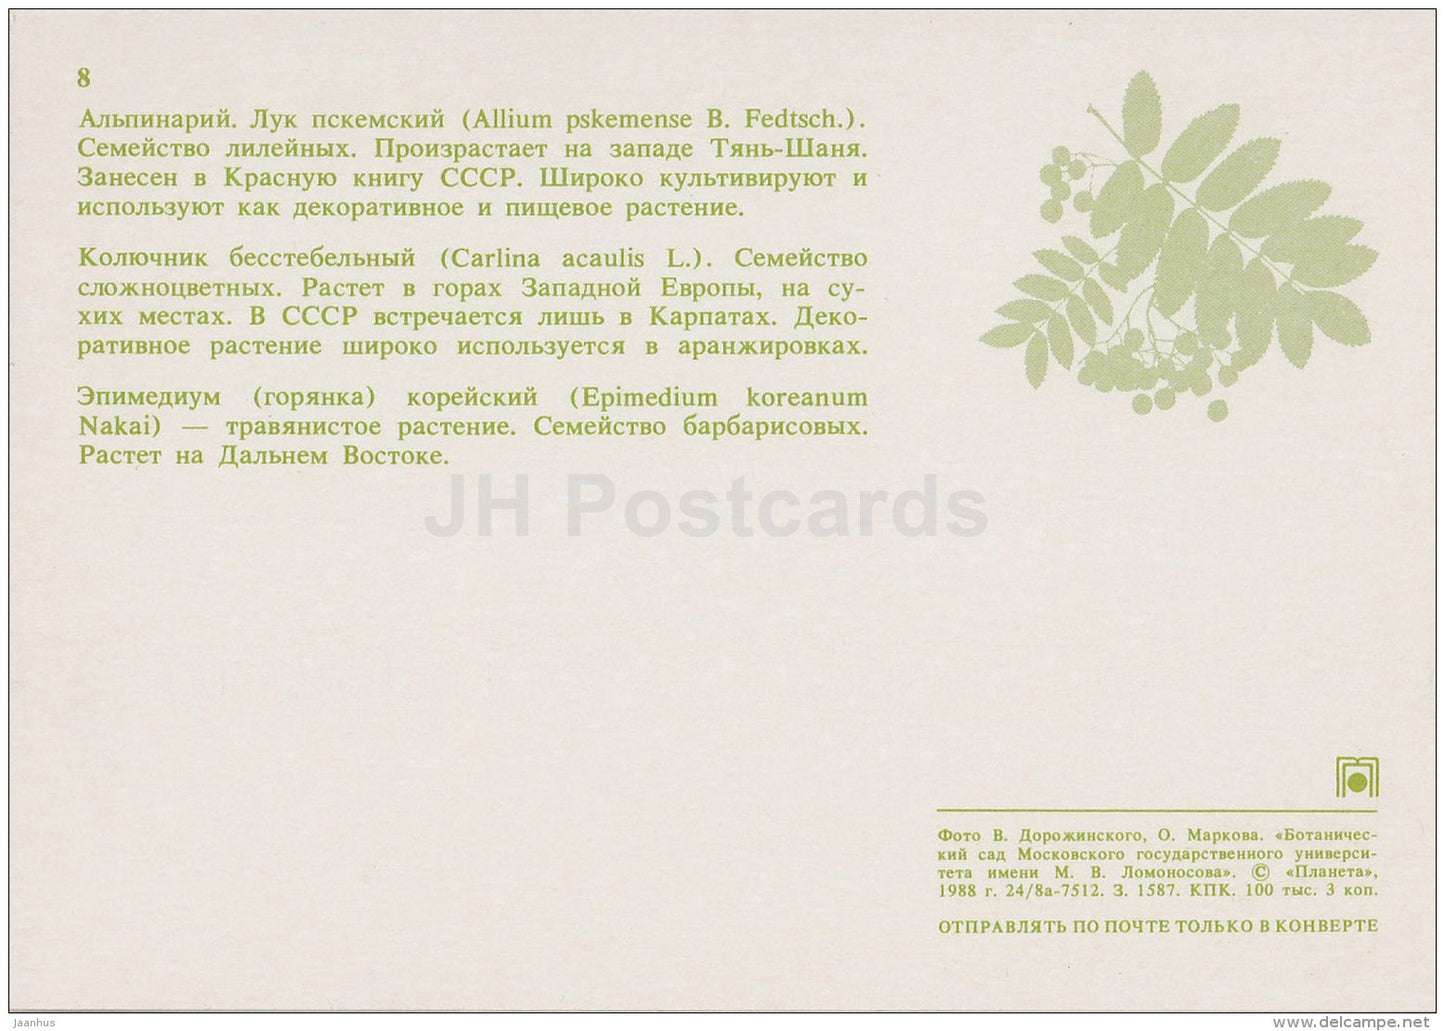 alpinarium - Carlina acaulis - Epimedium koreanum - Moscow Botanical Garden - 1988 - Russia USSR - unused - JH Postcards